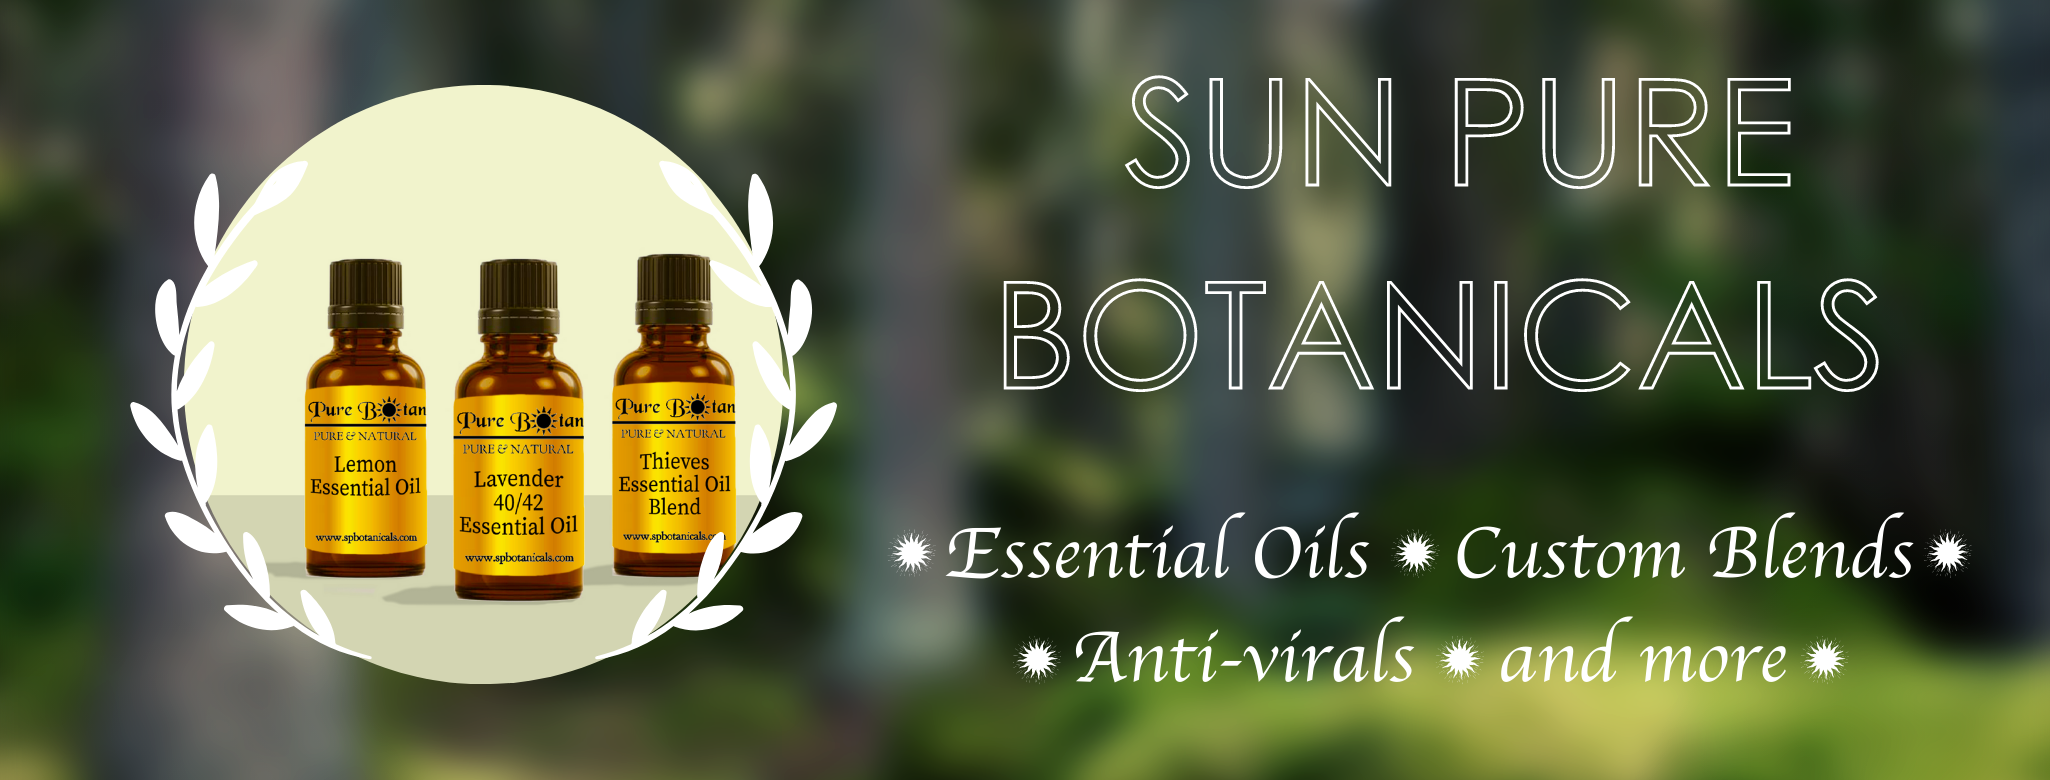 In Sun Essential Oils